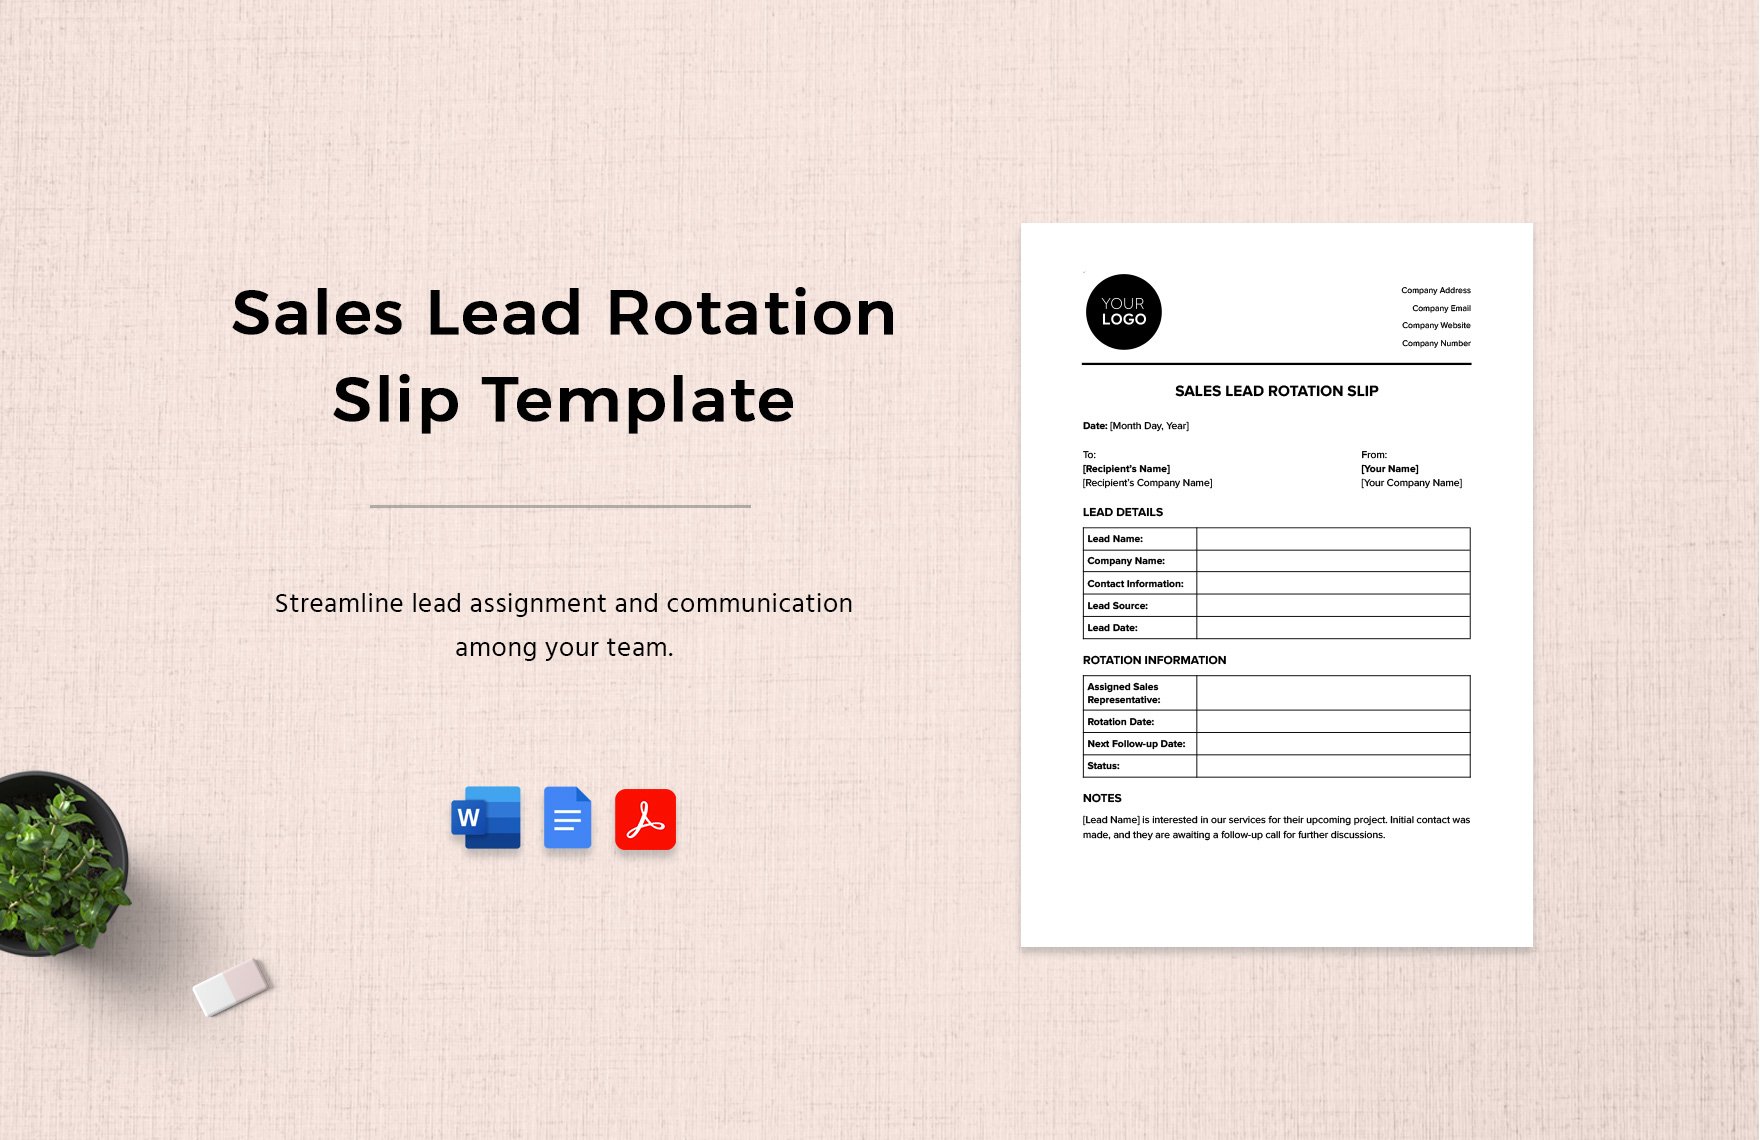 Sales Lead Rotation Slip Template